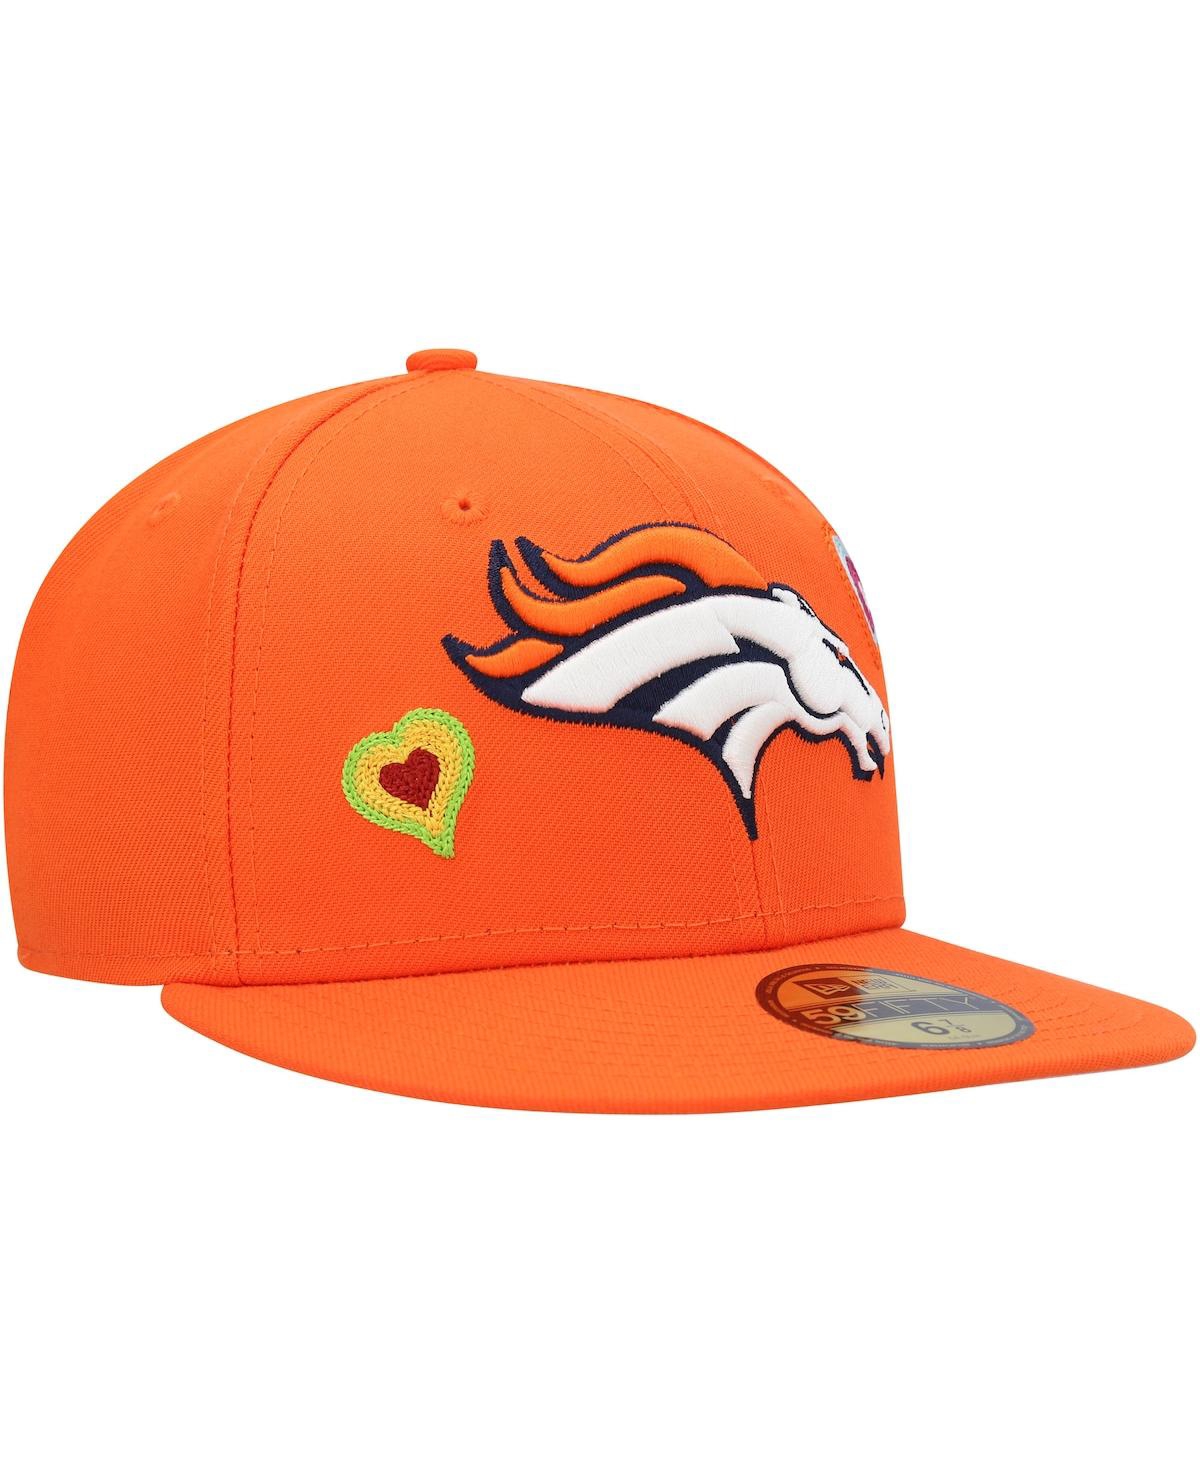 Shop New Era Men's  Orange Denver Broncos Chain Stitch Heart 59fifty Fitted Hat